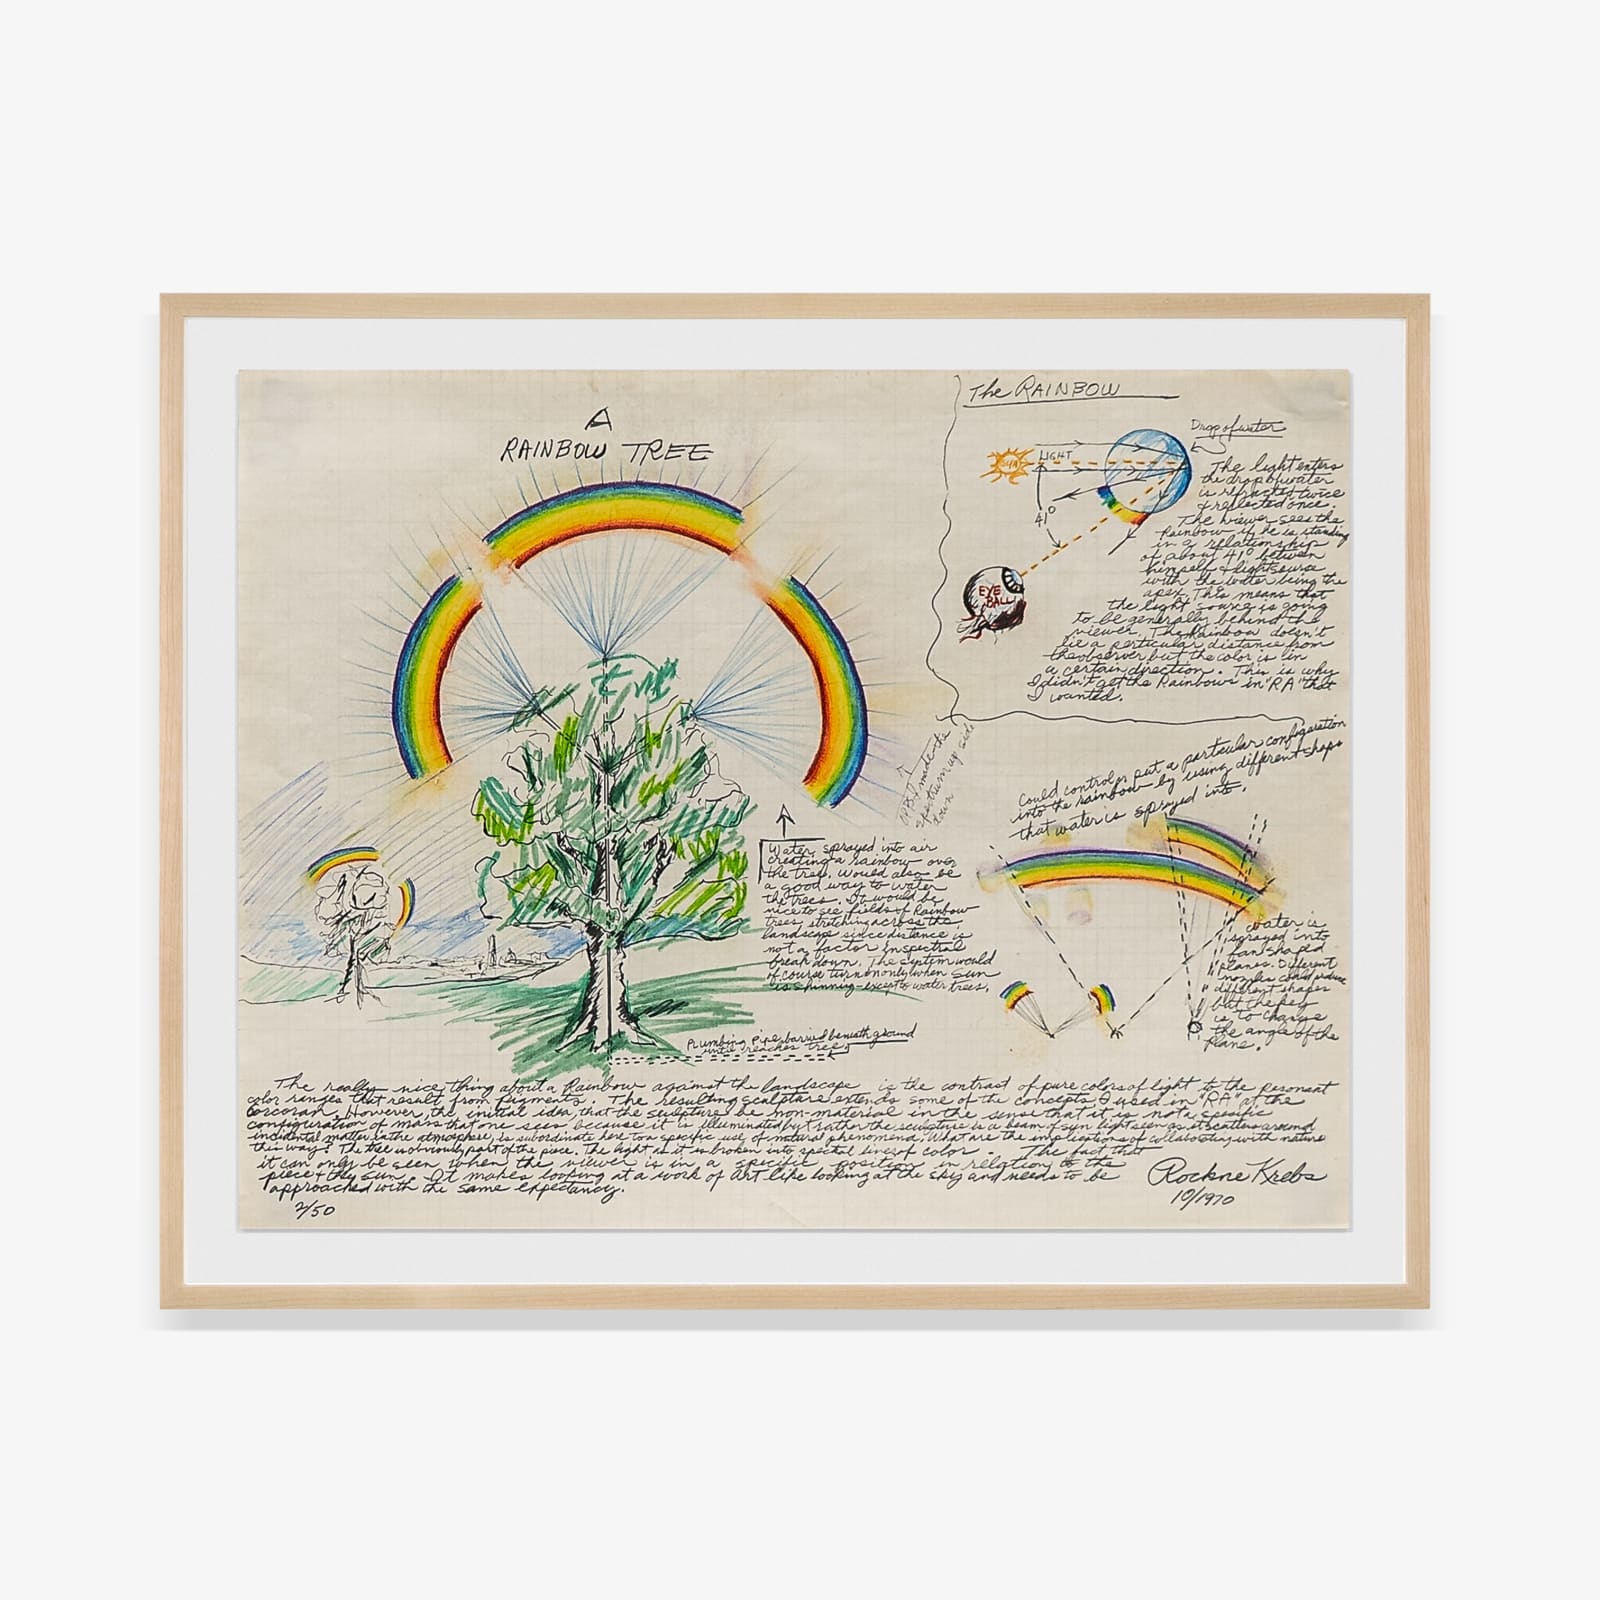 Rockne Krebs, A Rainbow Tree, 1970